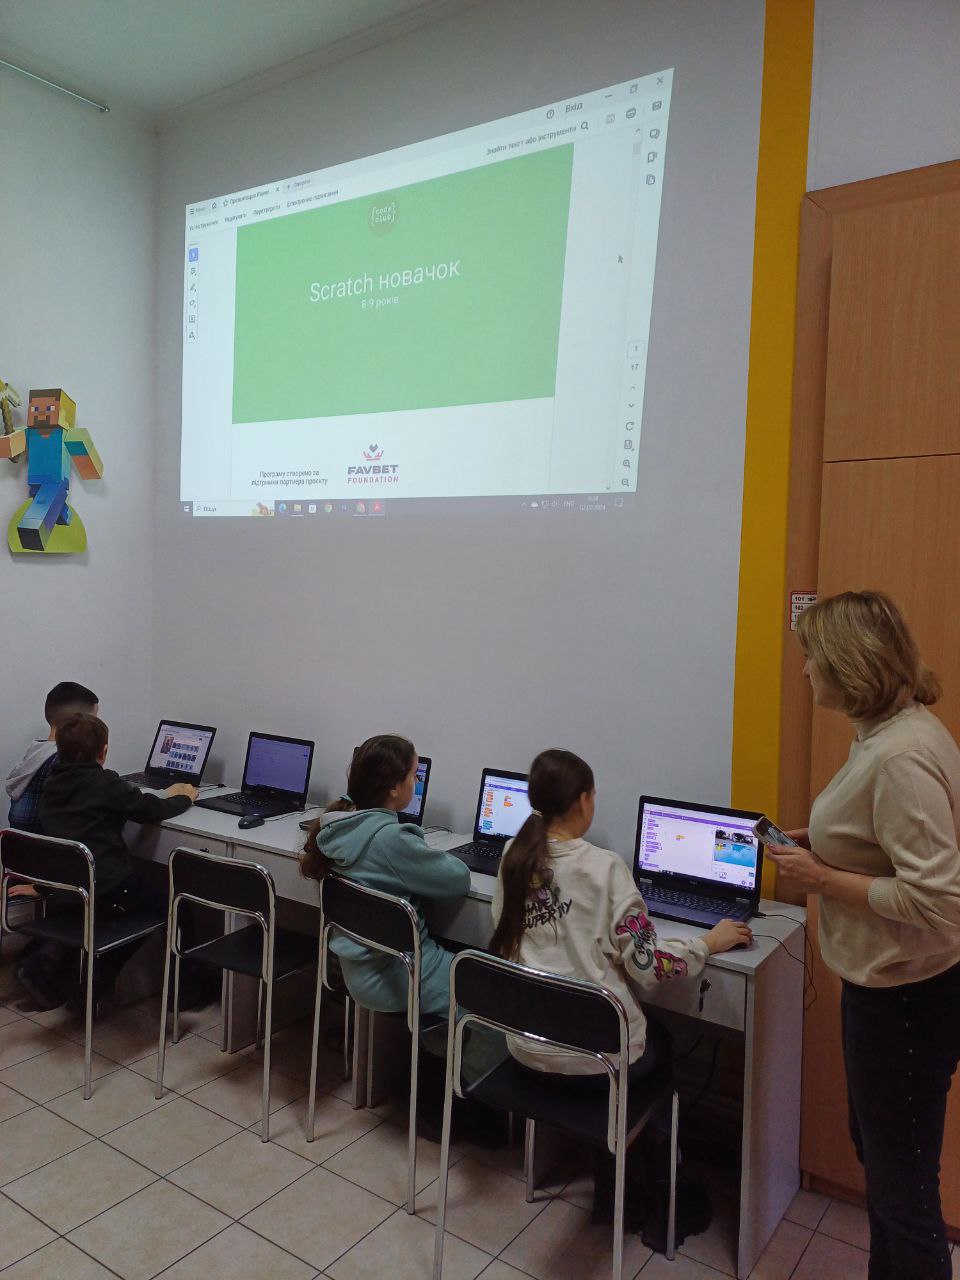 Уже 546 детей бесплатно учатся программированию на курсах Scratch от Favbet Foundation и Code Club Украина